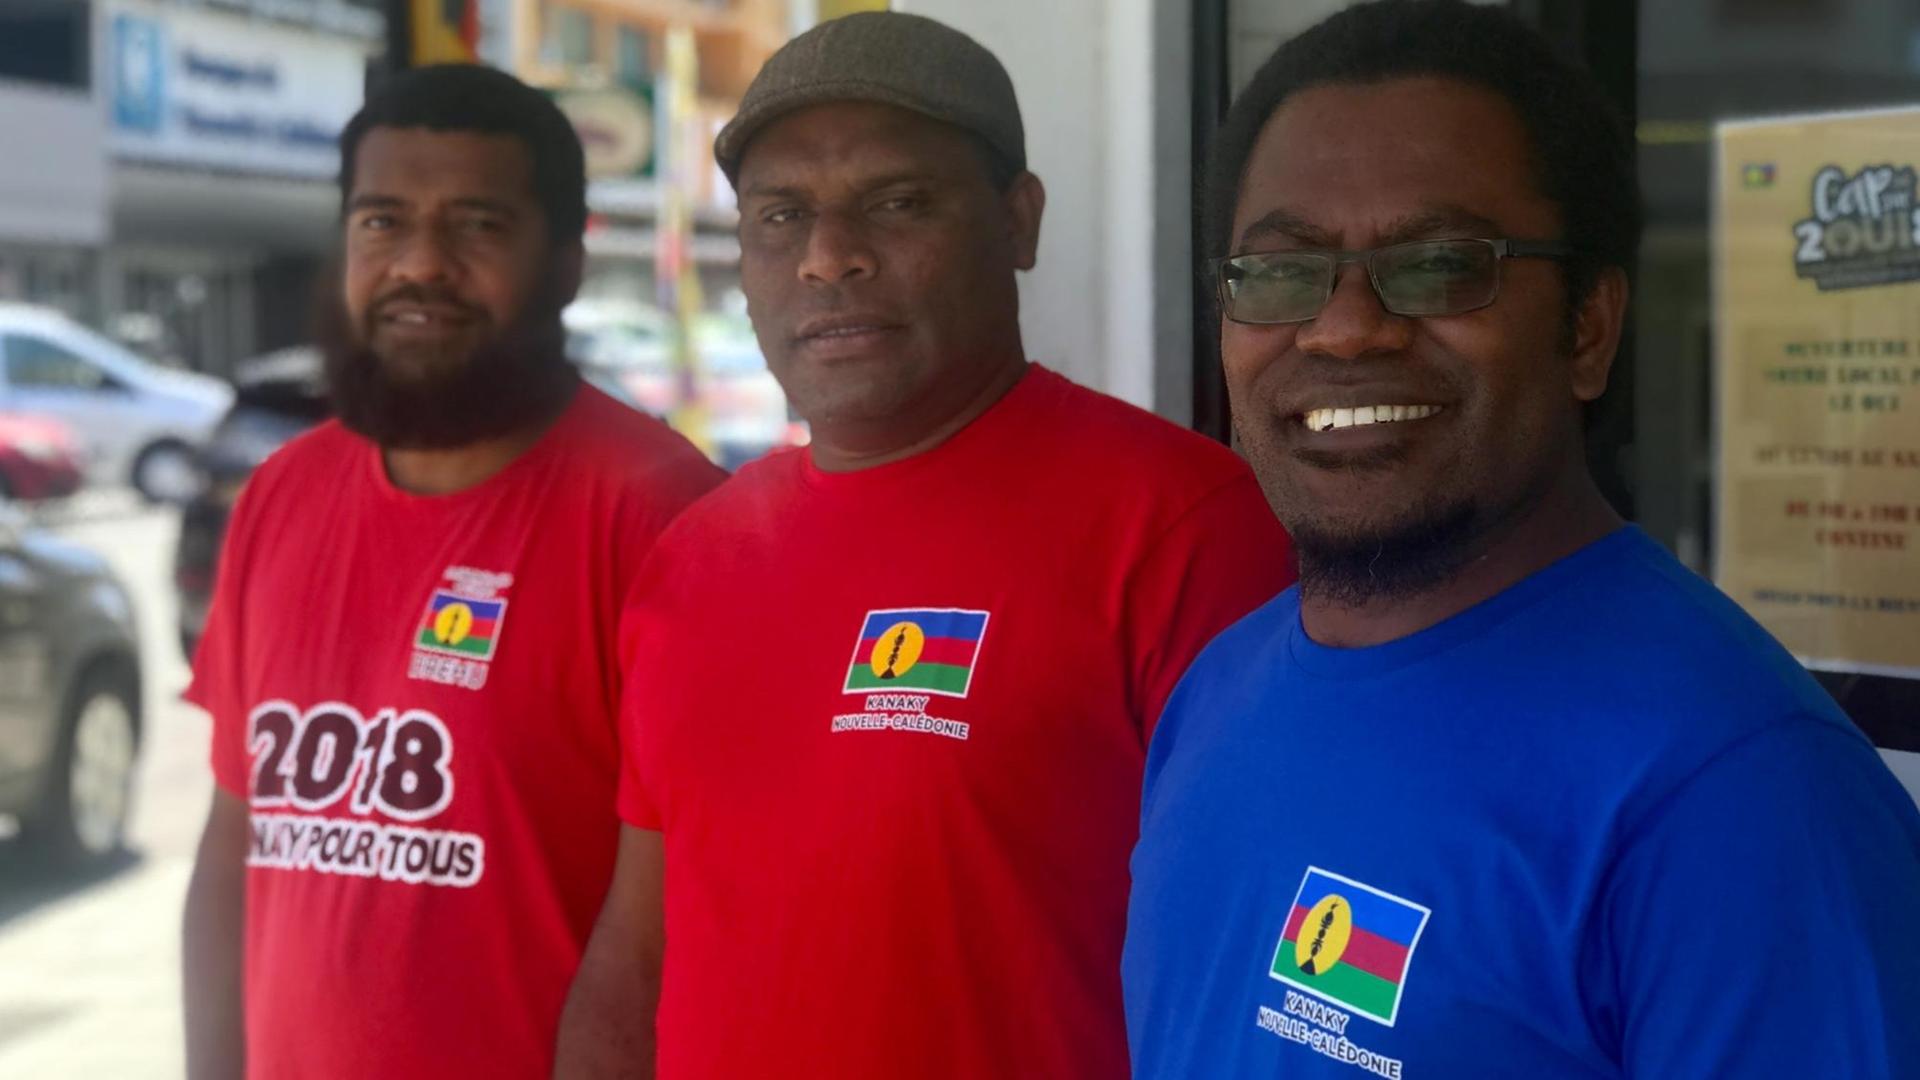 Anhänger der Partei FLNKS (Front de libération nationale kanak et socialiste), die für die Unabhängigkeit Neukaledonien von Frankreich eintritt, stehen zusammen.